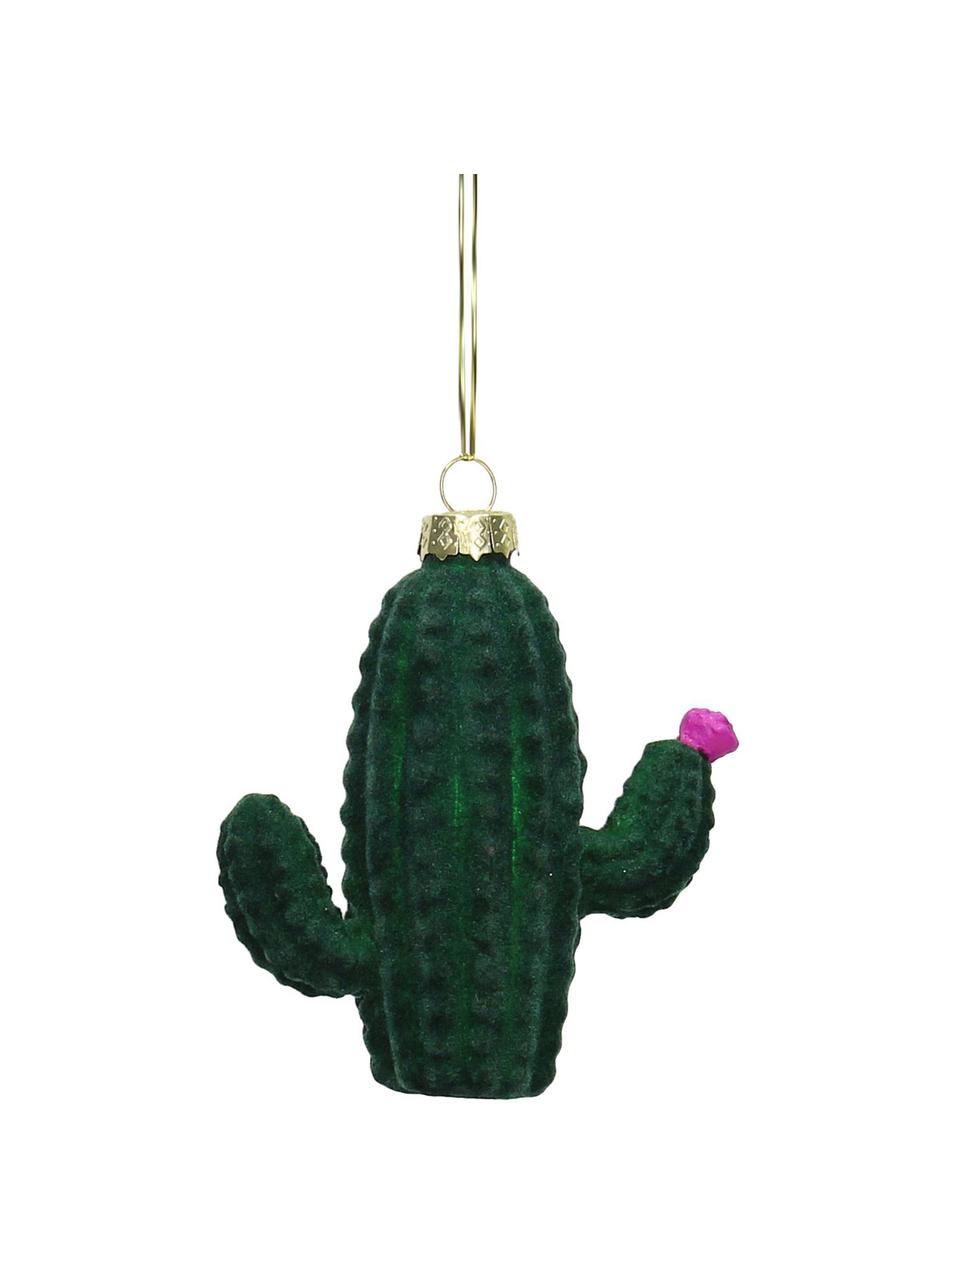 Kerstboomhangers Cactus, 2 stuks, Groen, roze, 9 x 9 cm